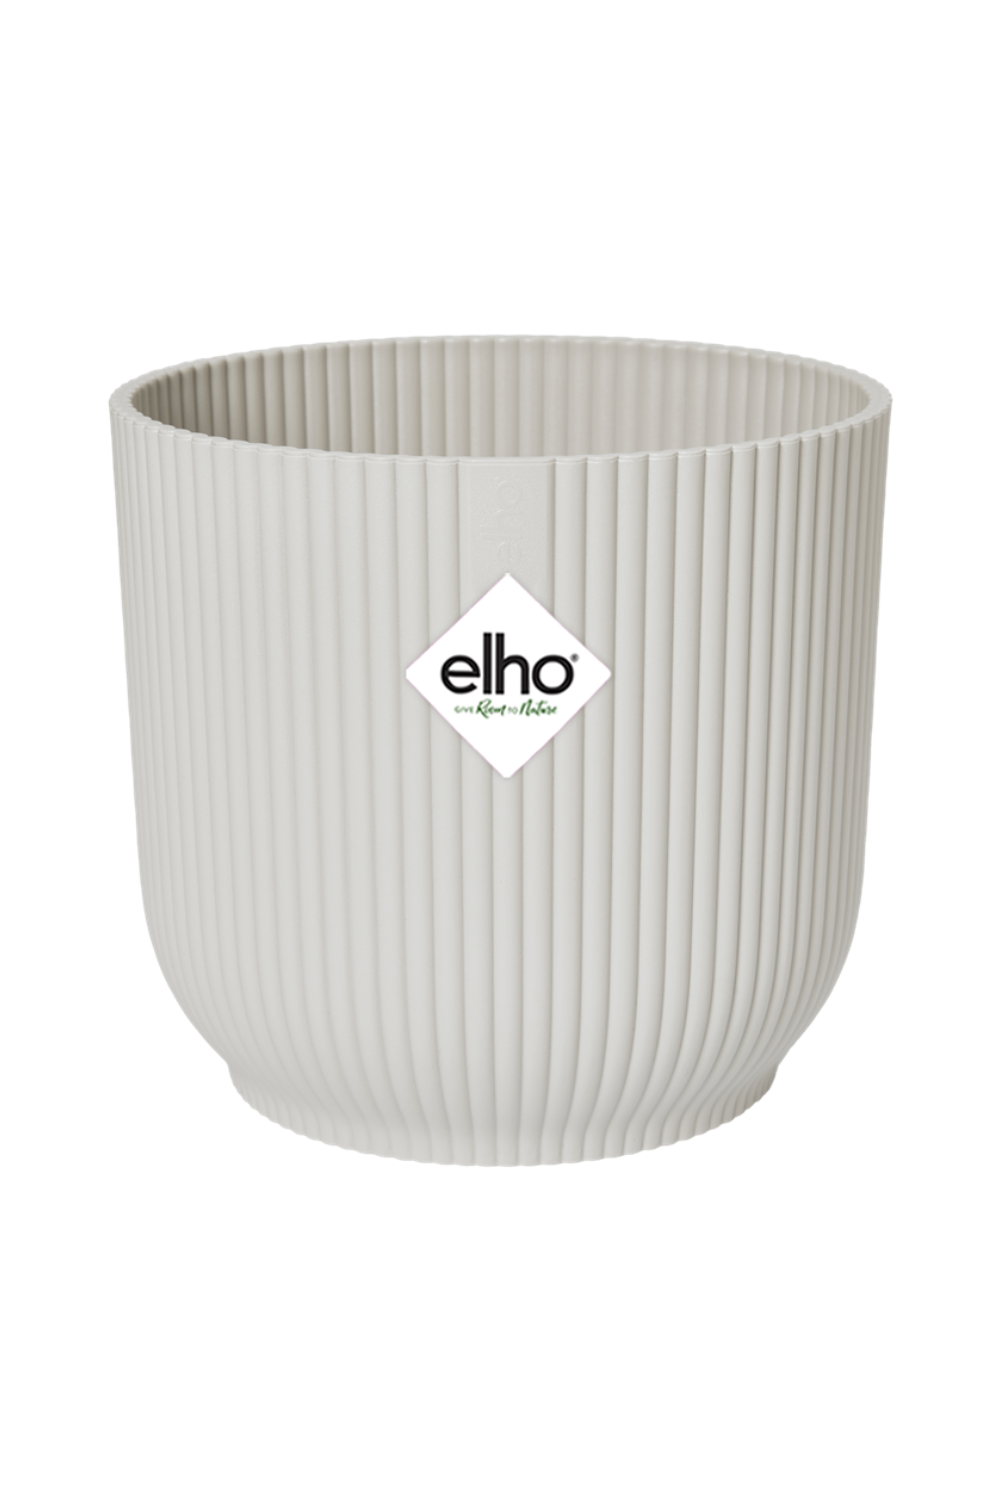 Blumentopf Elho Vibes Fold rund Silky White 14cm